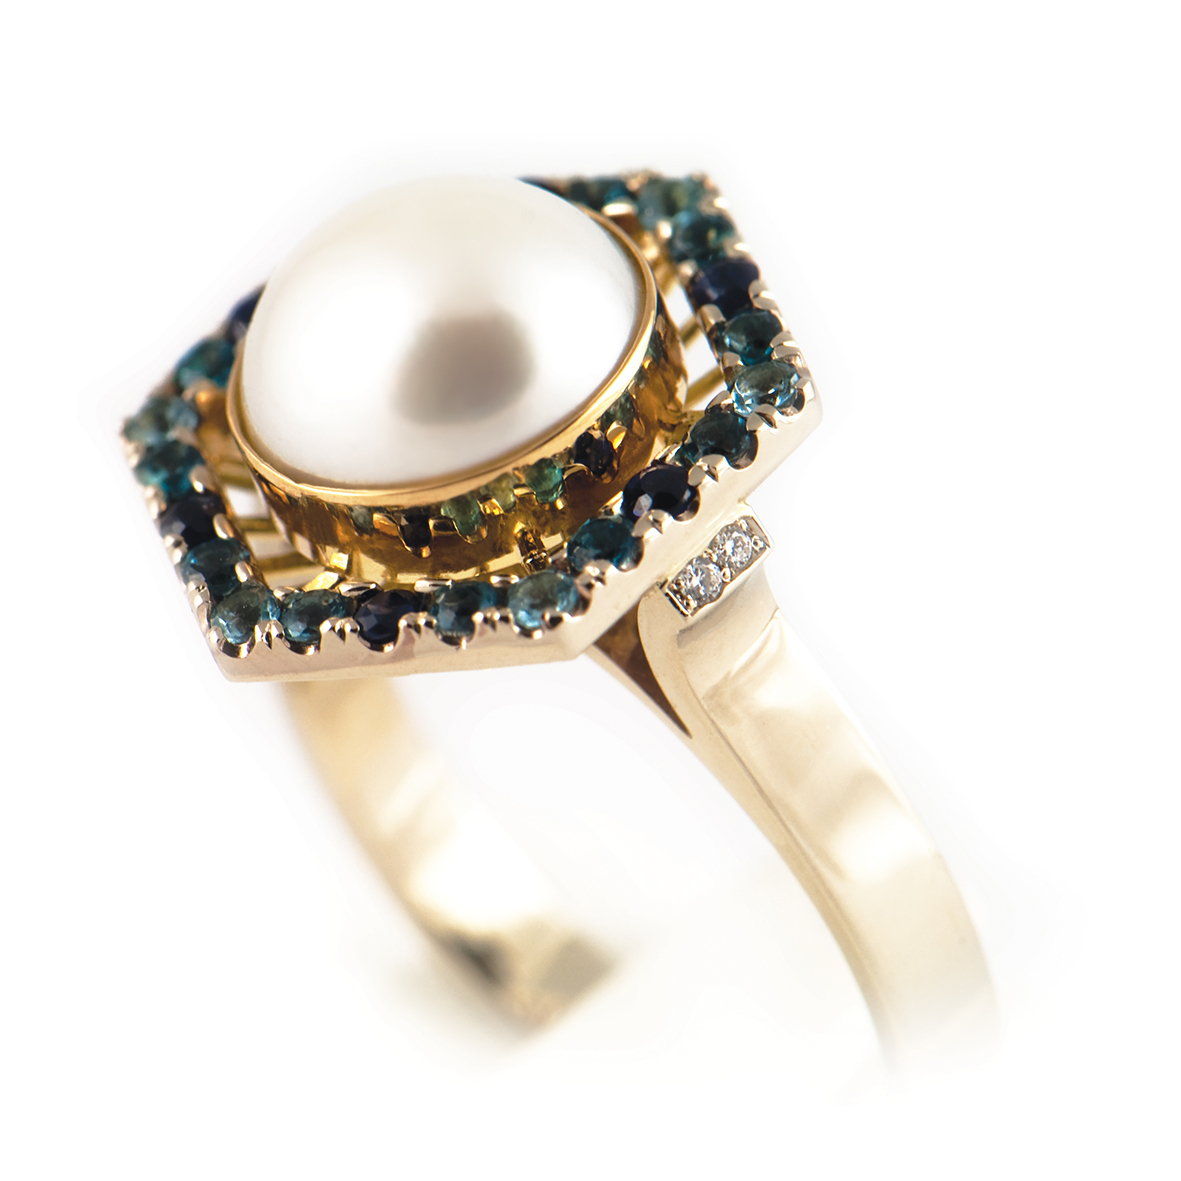 Pierścionek wykonany z białego i żółtego złota próby 585 z perłą naturalną, topazami, szafirami oraz brylantami.